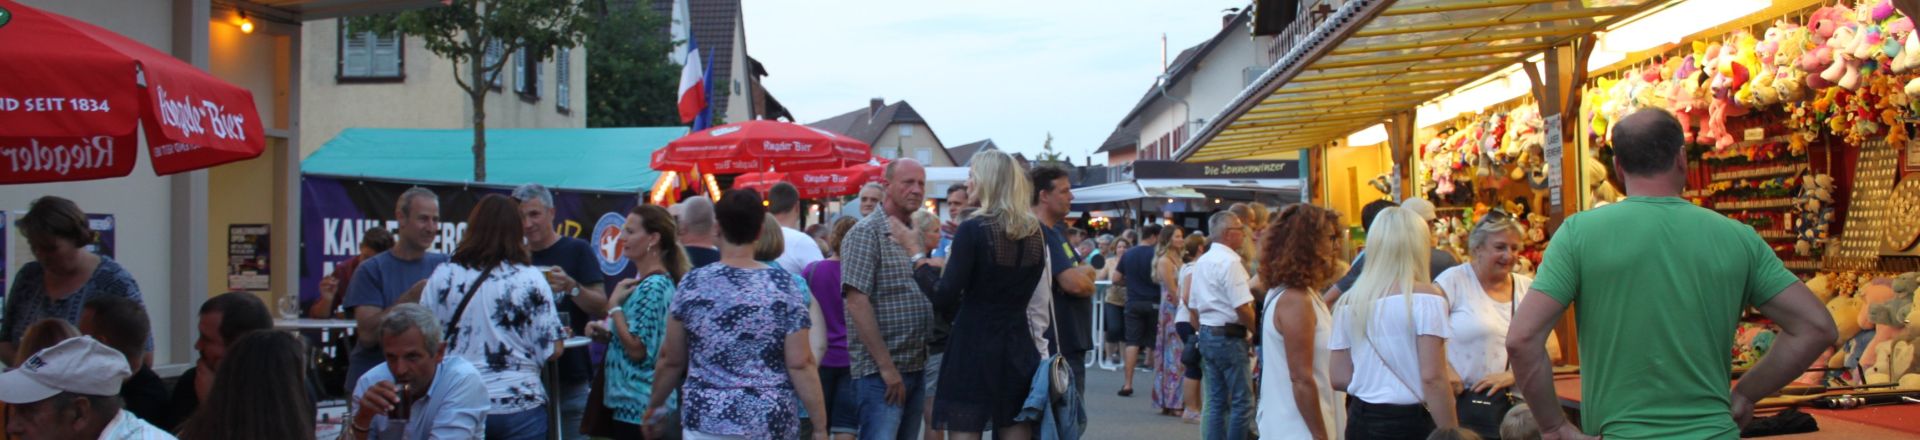 Wein- und Gassenfest in Ringsheim